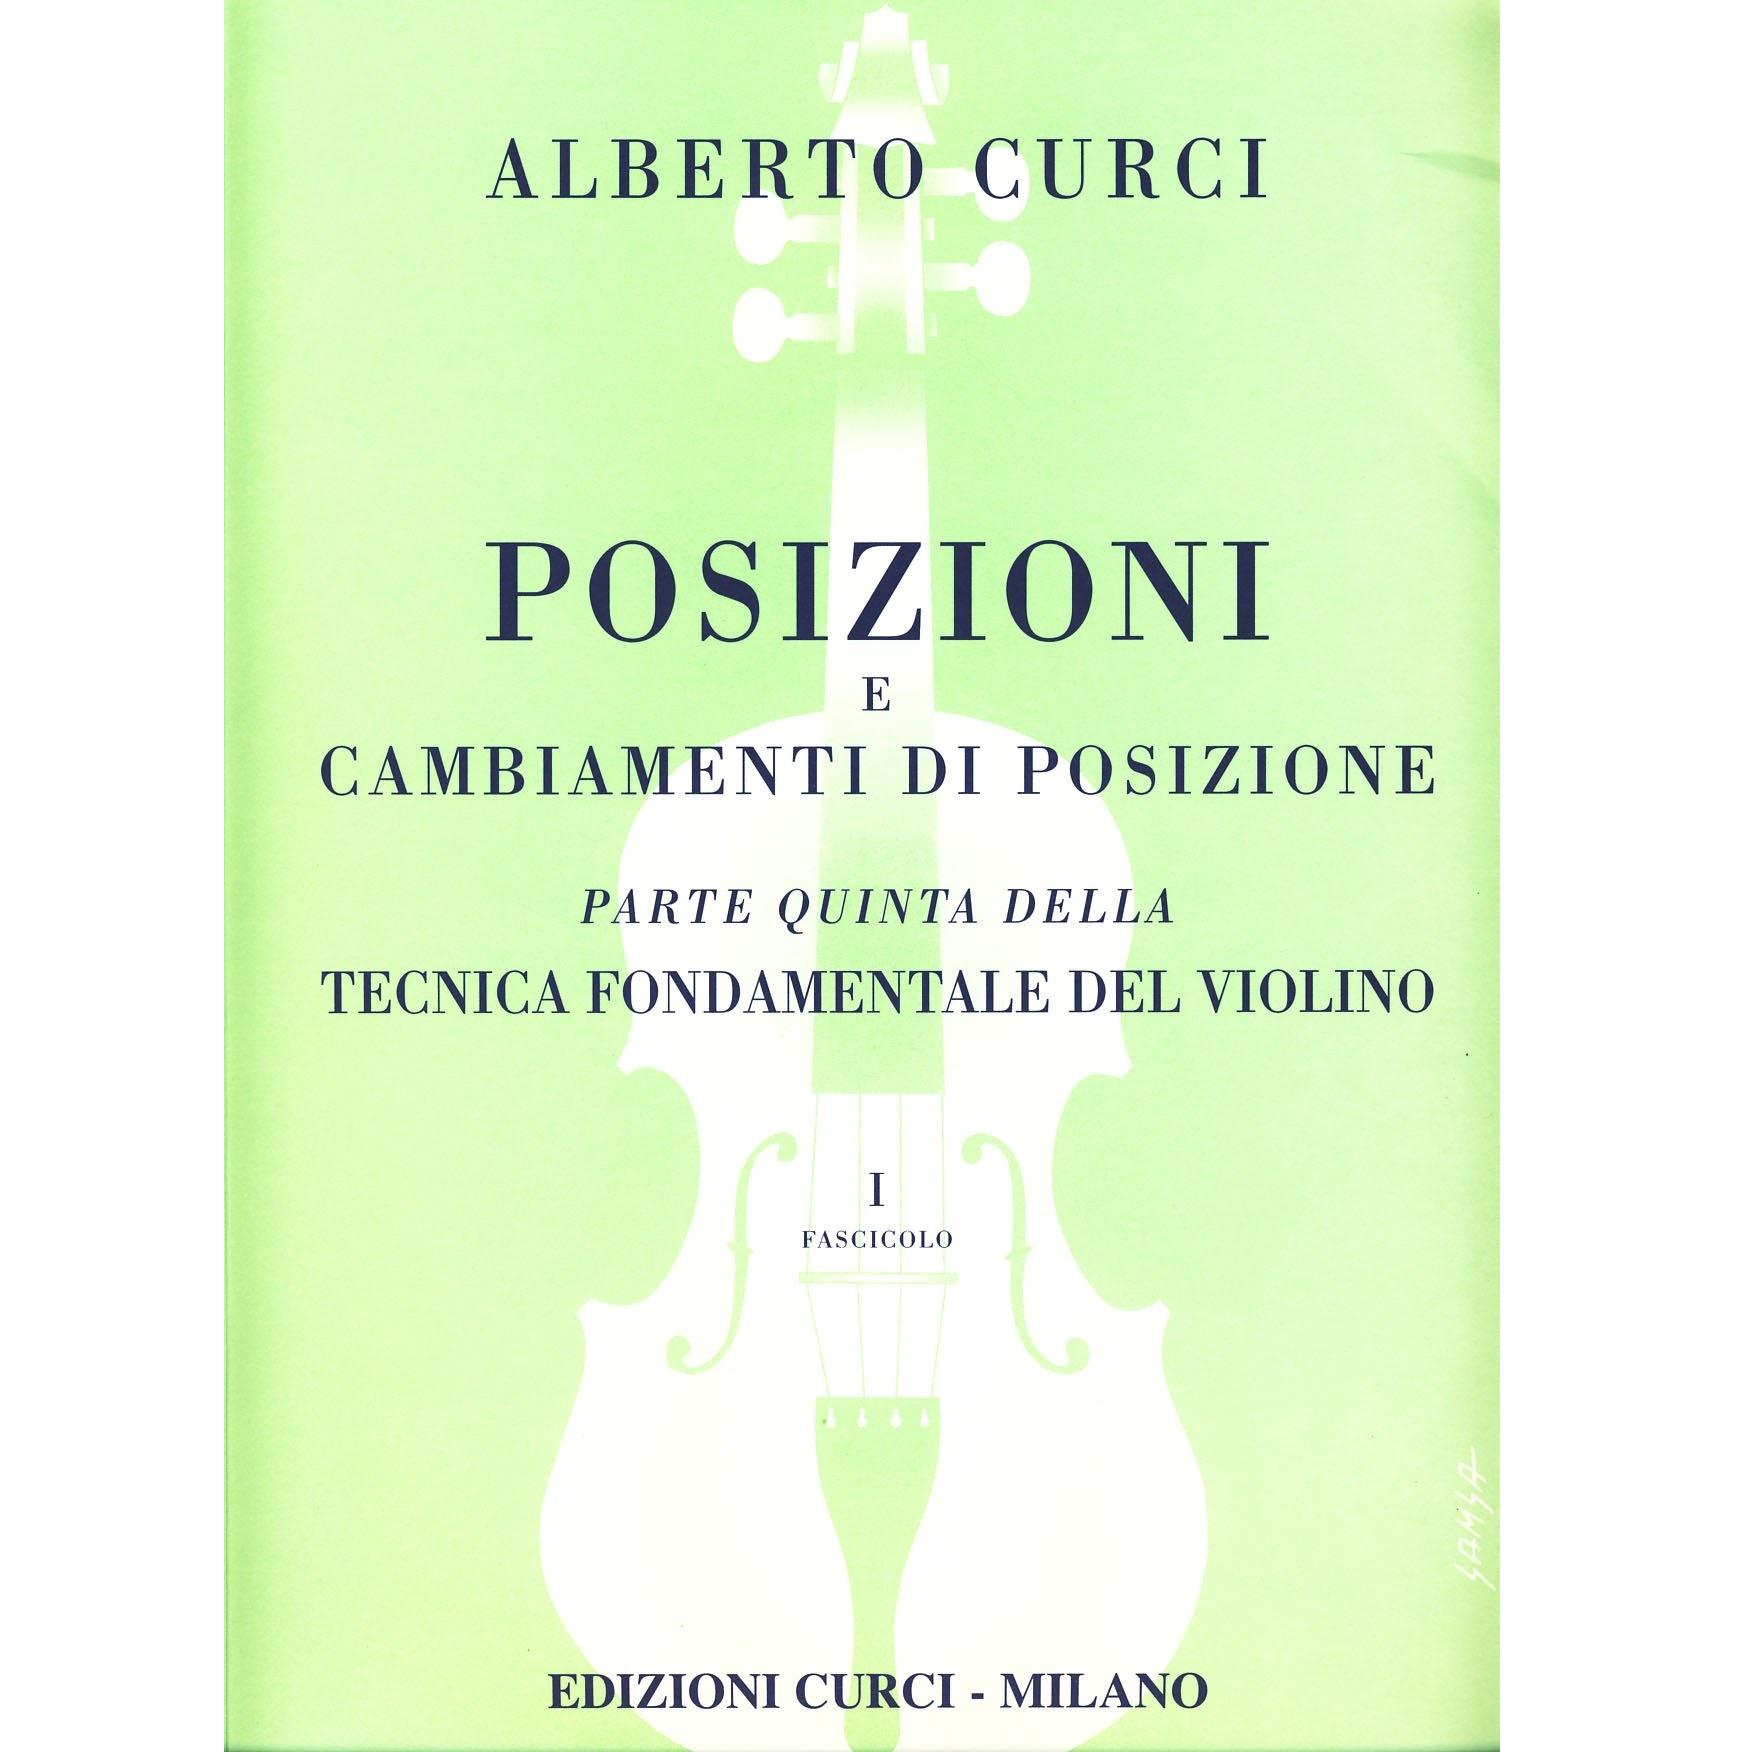 Curci Posizioni e cambiamenti di posizione Parte quinta della Tecnica Fondamentale del violino Fascicolo I - Edizioni Curci Milano 